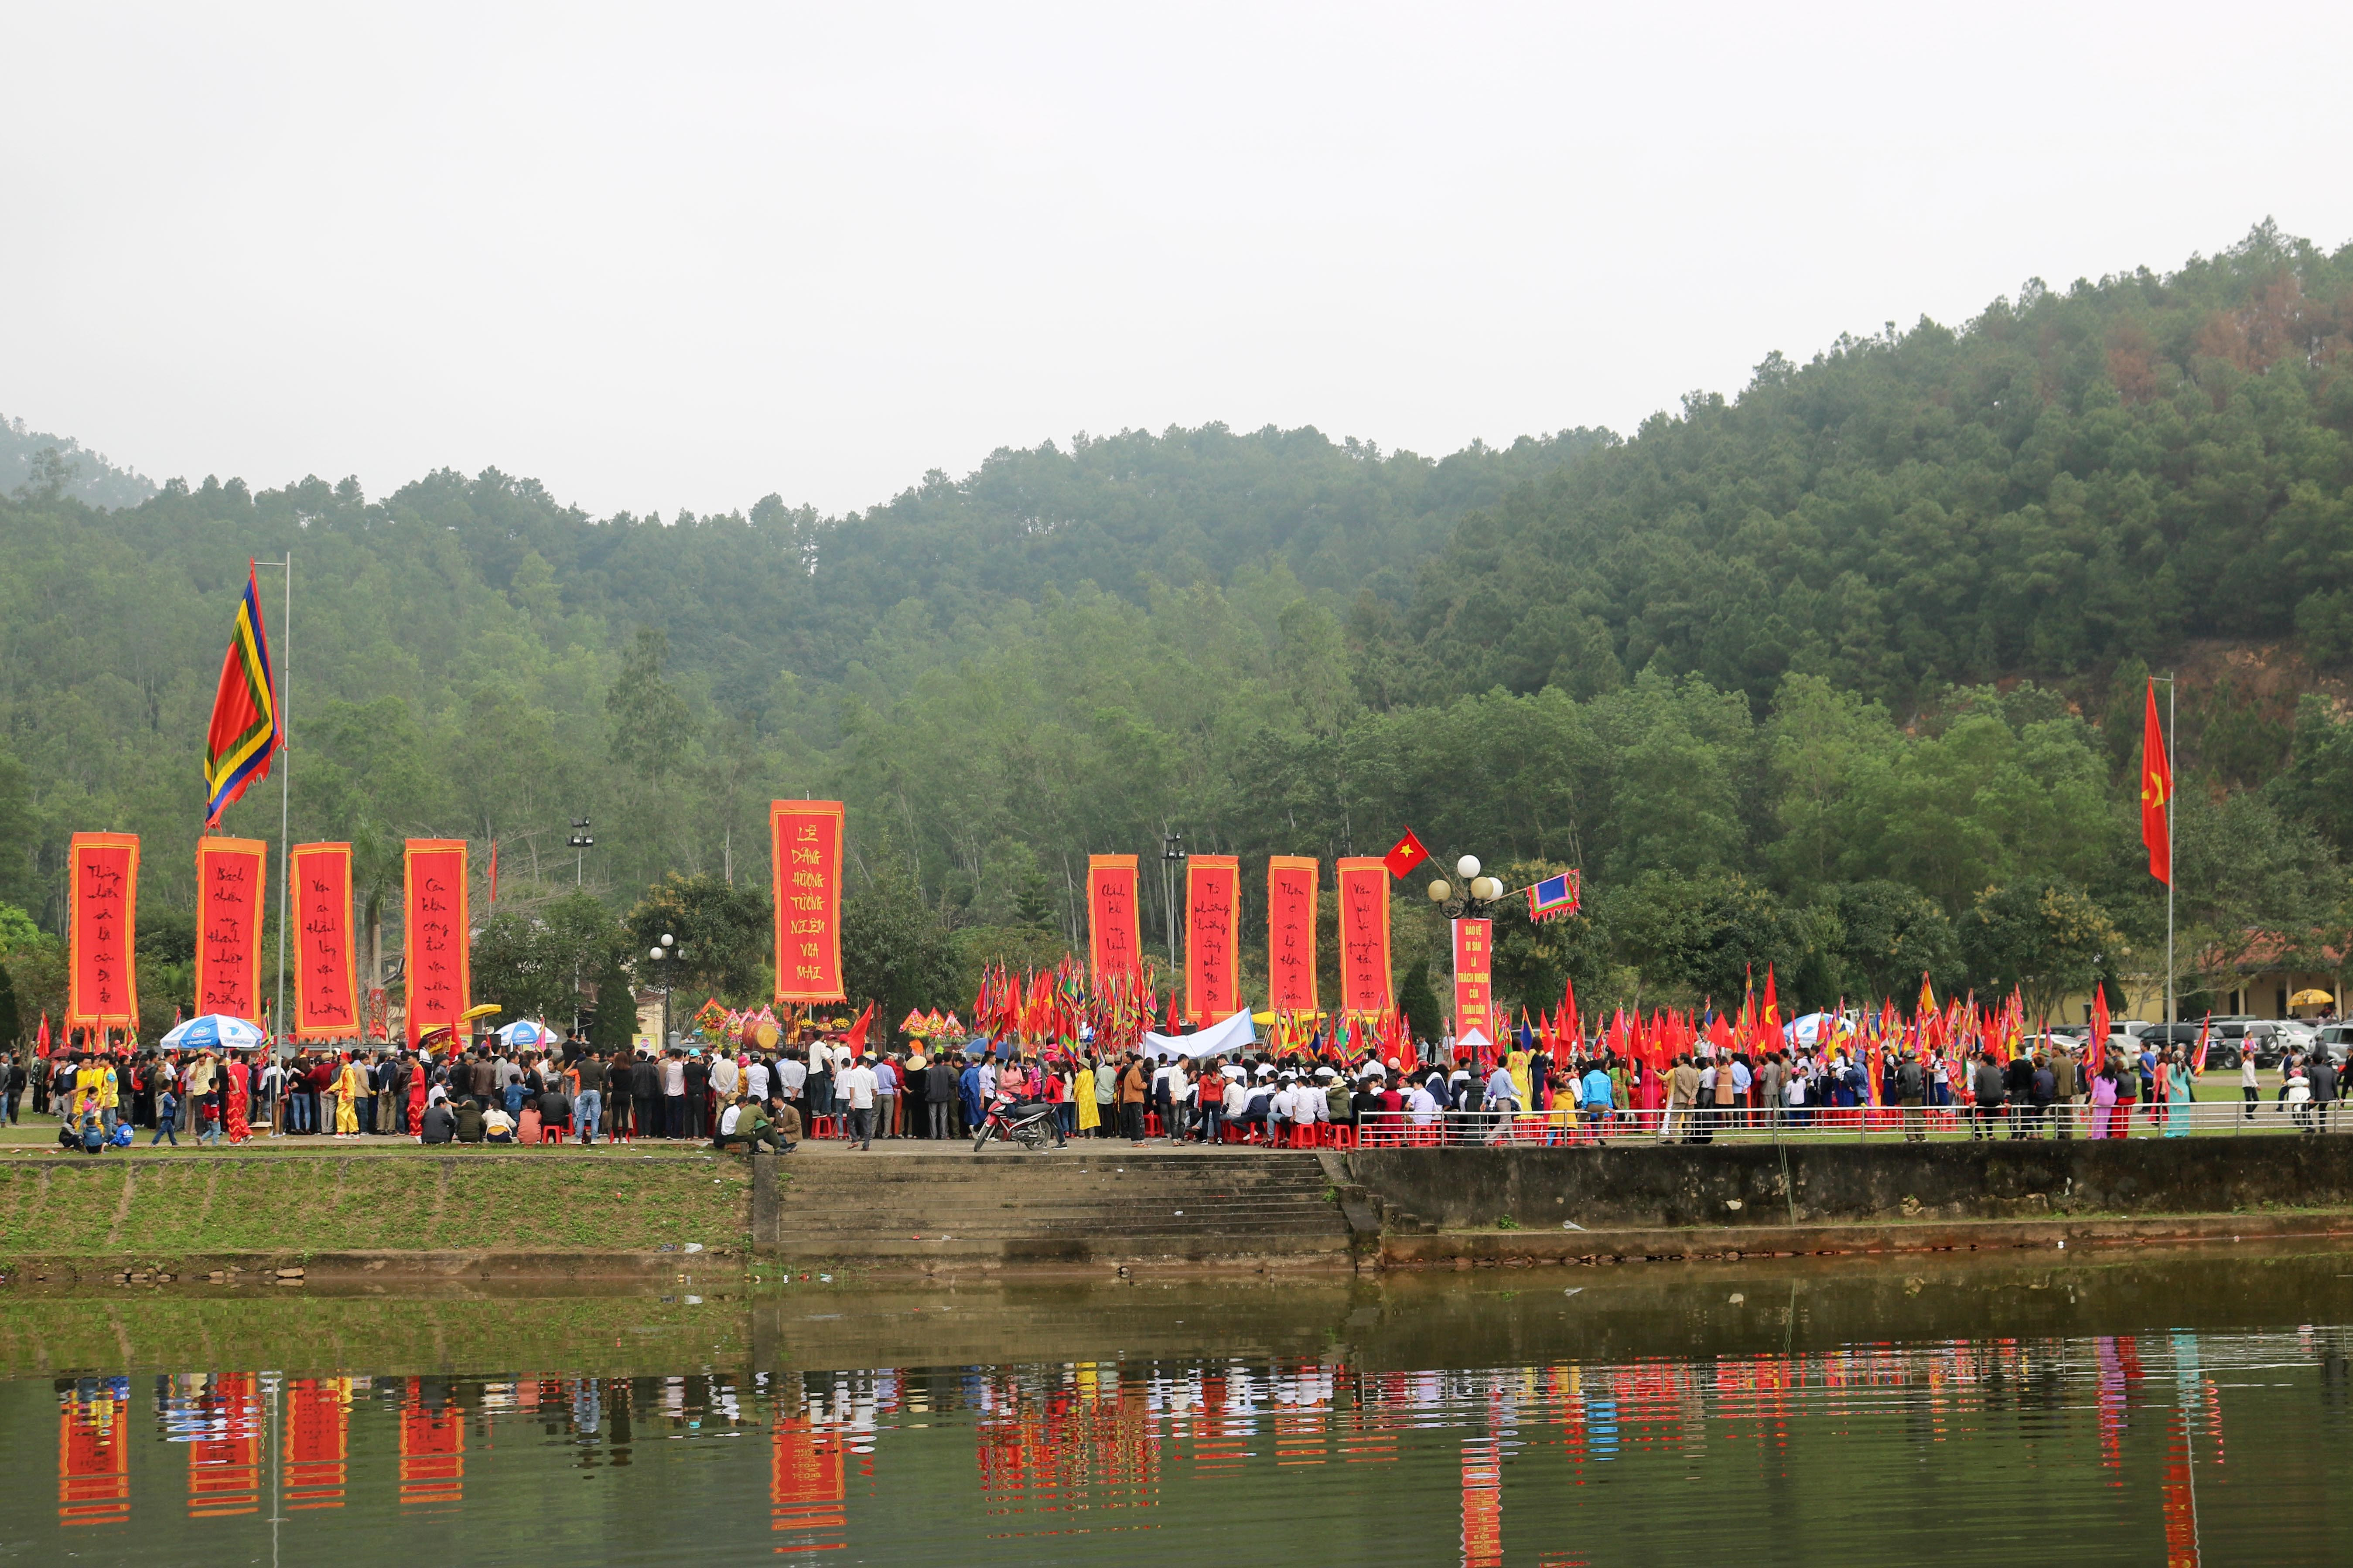 Quang cảnh trung tâm Lễ hội dưới chân núi Hùng Sơn. Ảnh: Huy Thư